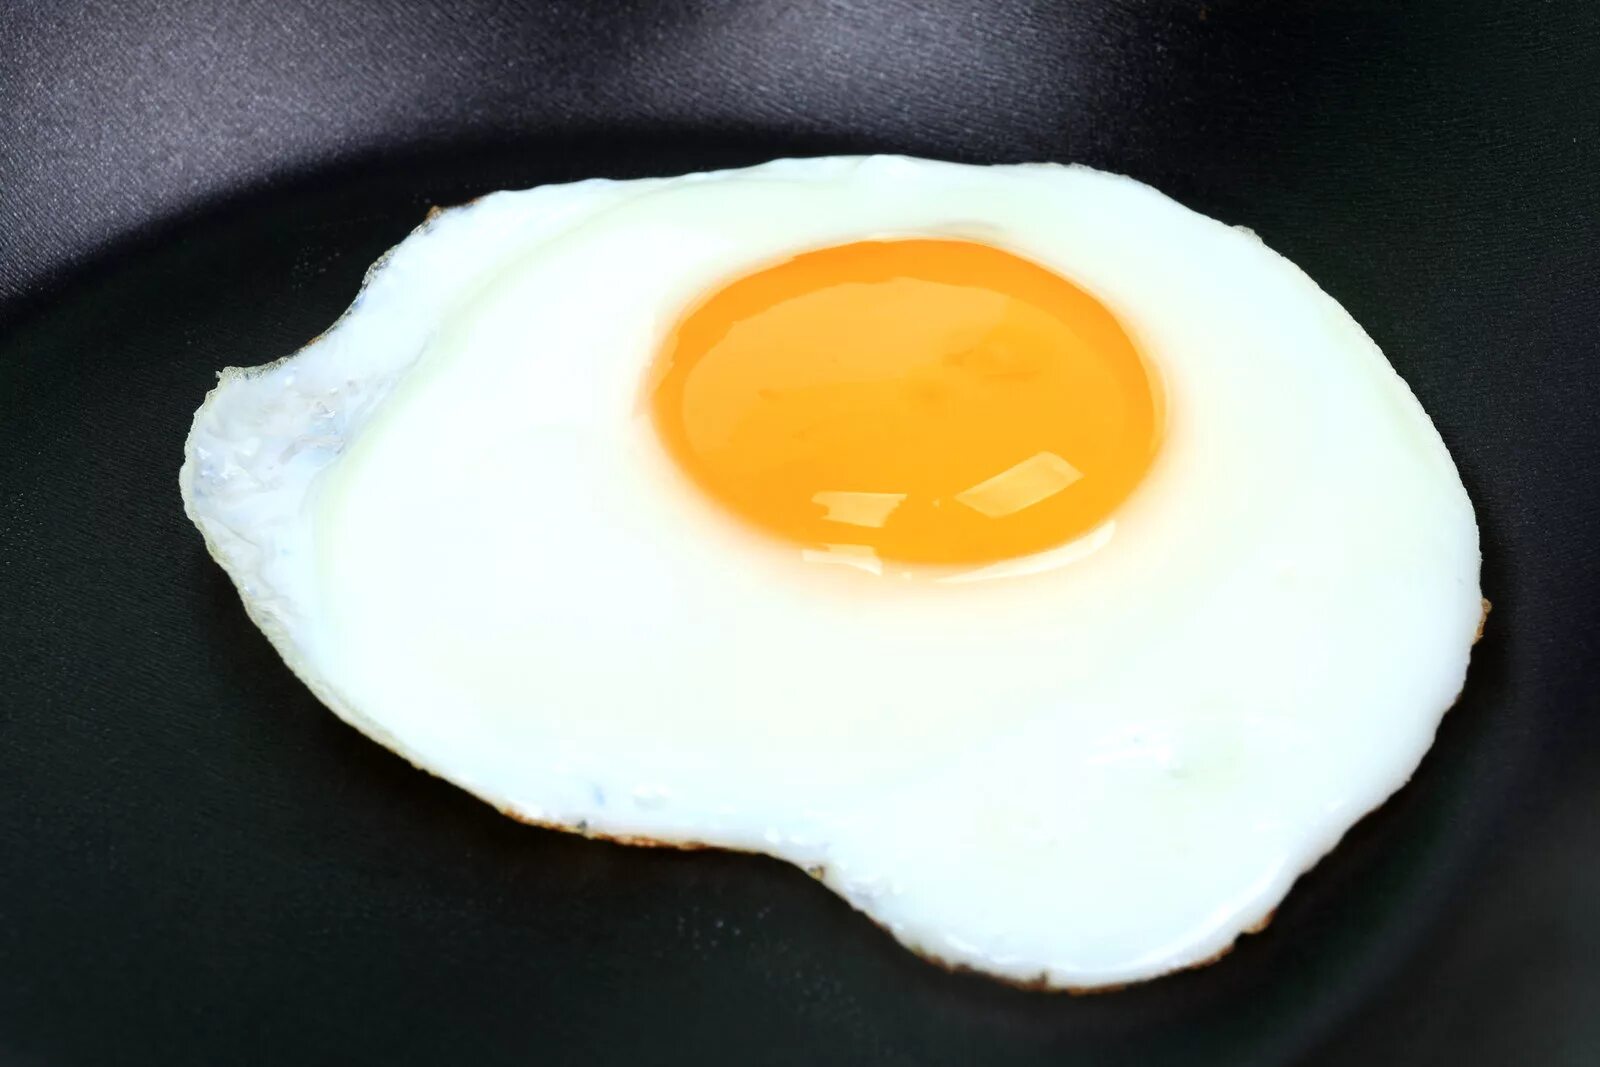 Cooked egg. Глазунья. Яичница. Жареные яйца. Глазок яичница.